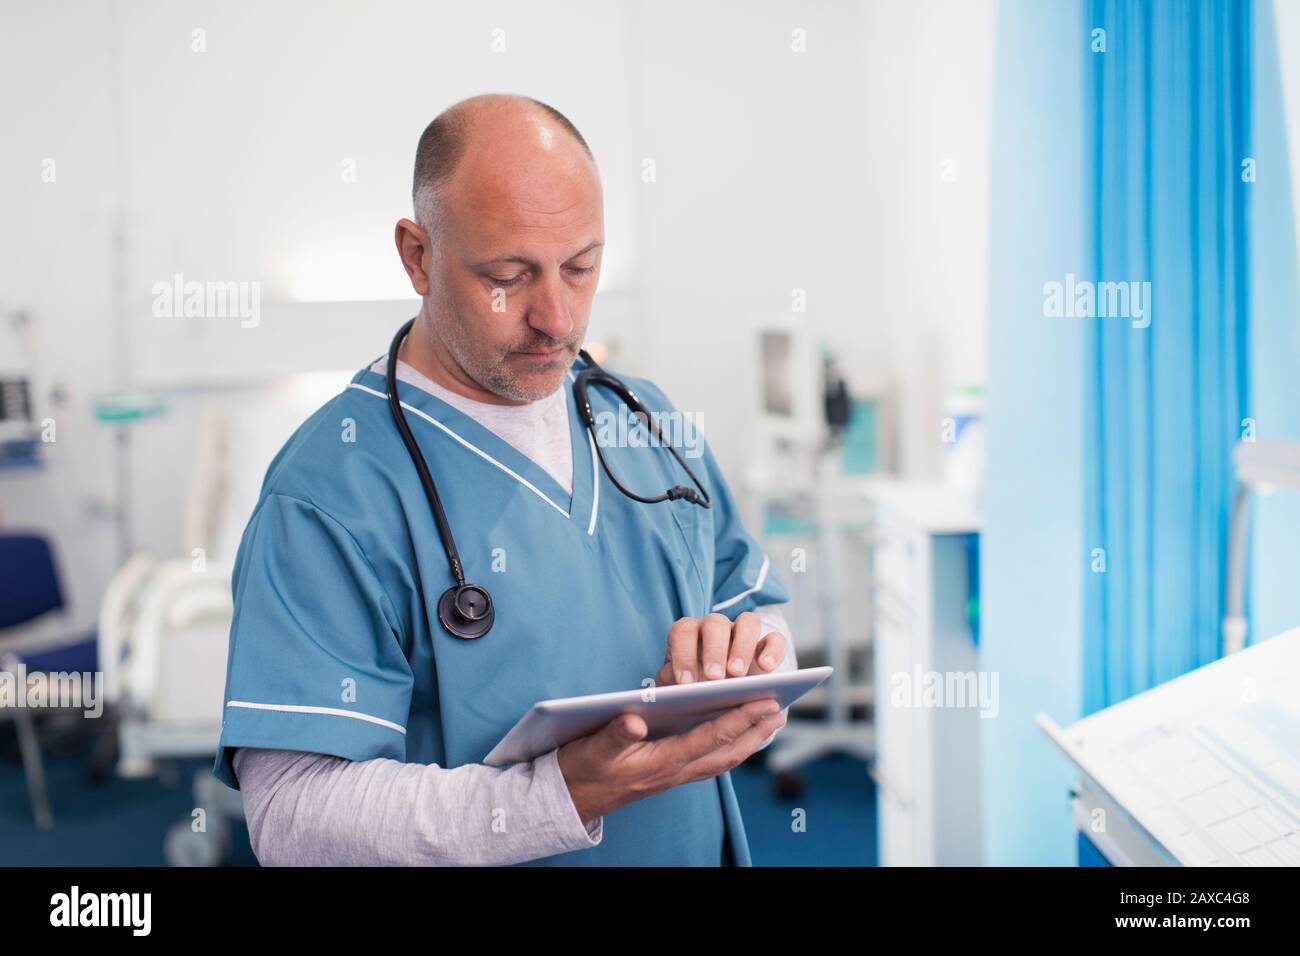 Medico di sesso maschile che utilizza un tablet digitale nella sala ospedaliera Foto Stock